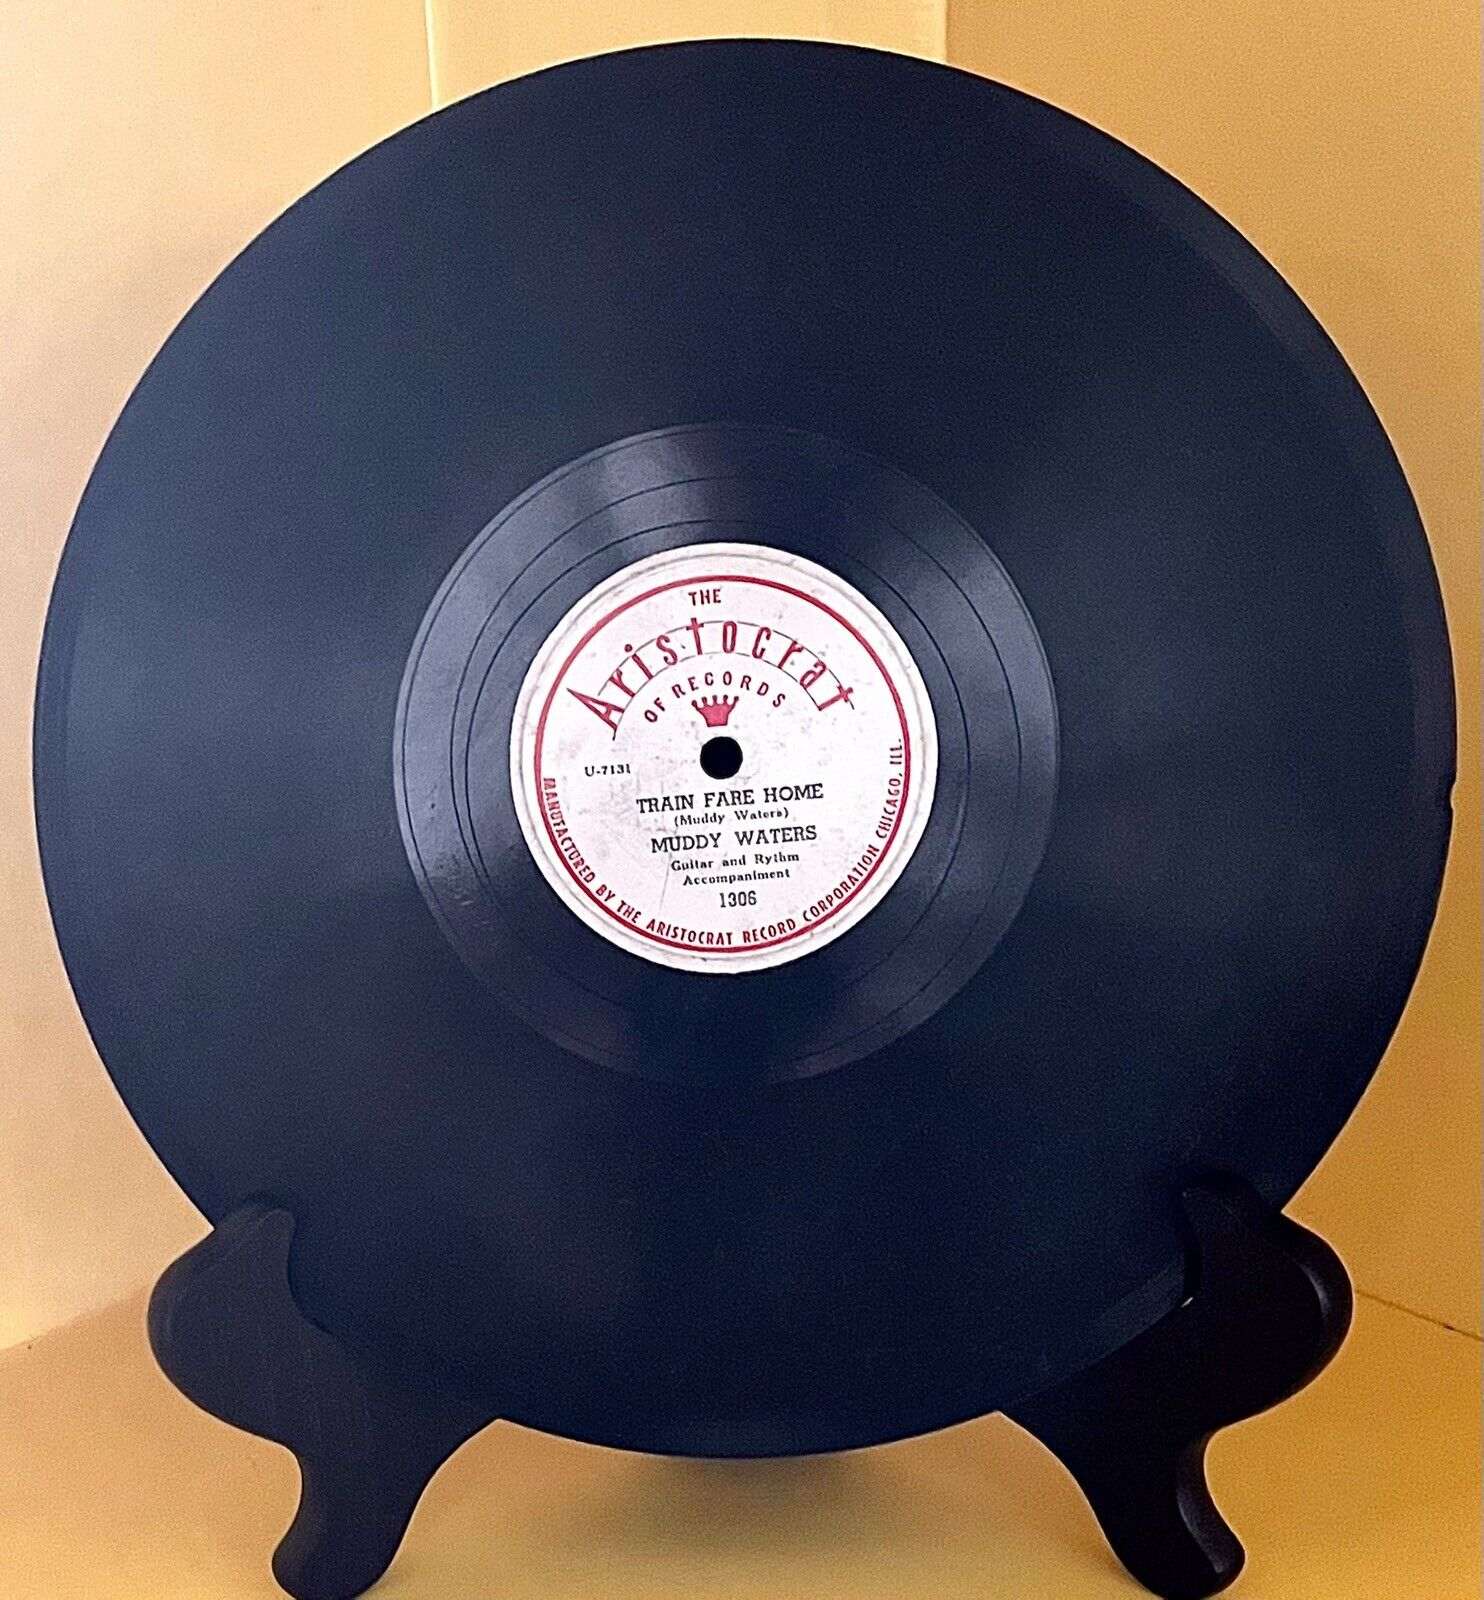 Muddy Waters 10” 78rpm Shellac ARISTOCRAT LABEL “Train Fare Home” # 1306